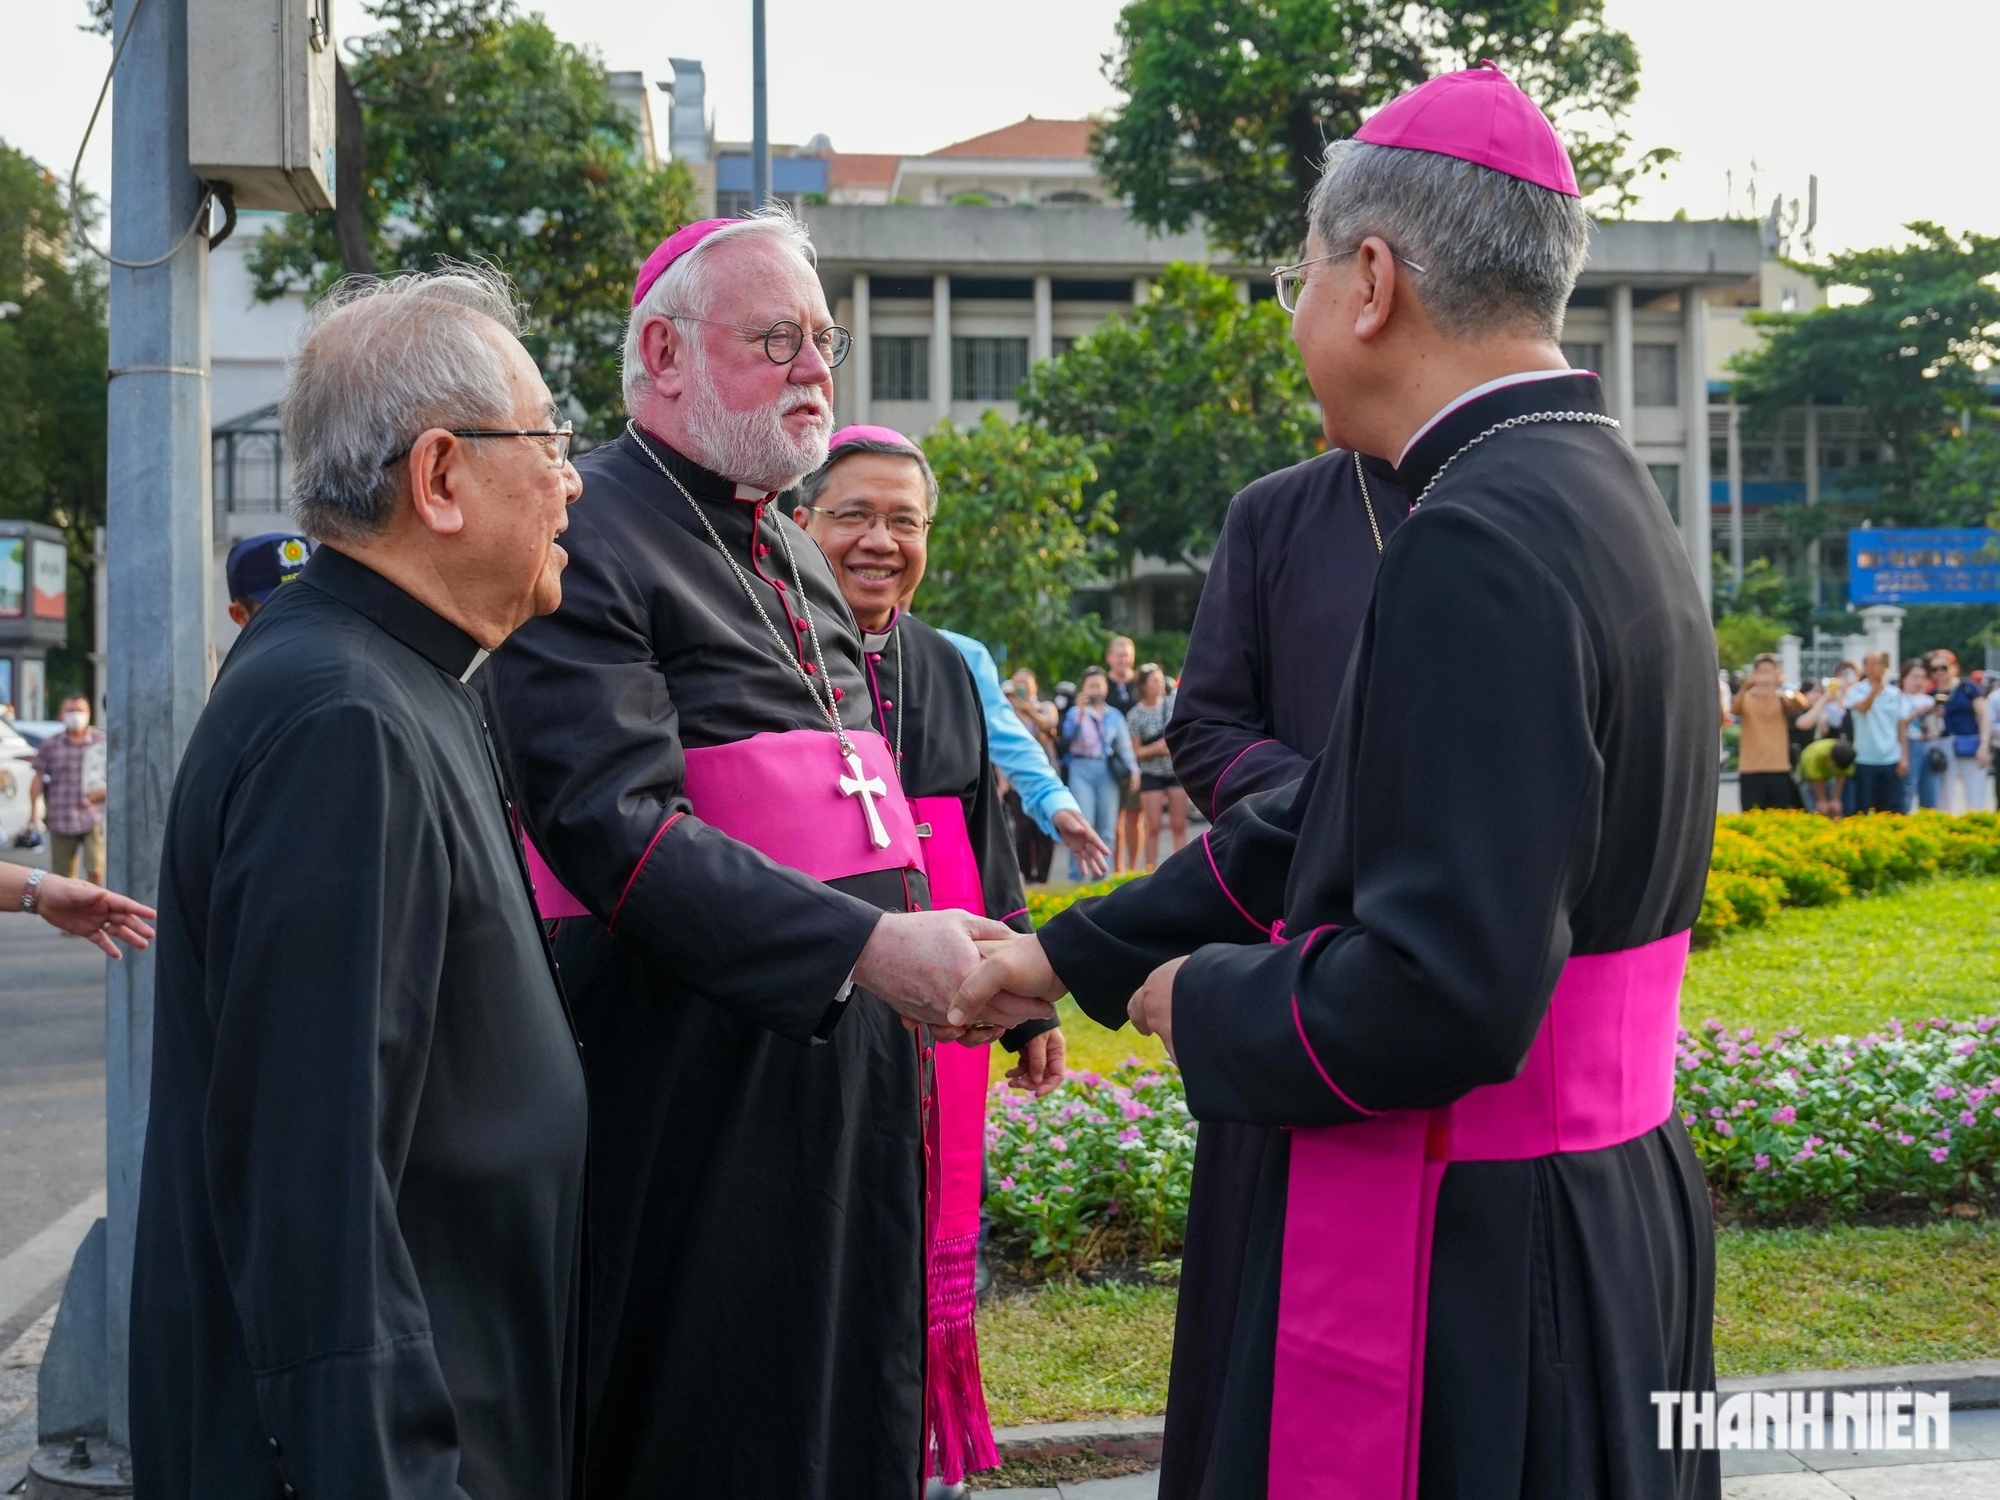 Sau khi thăm viếng các giáo phận Hà Nội và Huế, Tổng giám mục Paul Richard Gallagher đến thăm Tổng giáo phận TP.HCM. Đây là lần đầu tiên một bộ trưởng Ngoại giao của Tòa Thánh đến Việt Nam